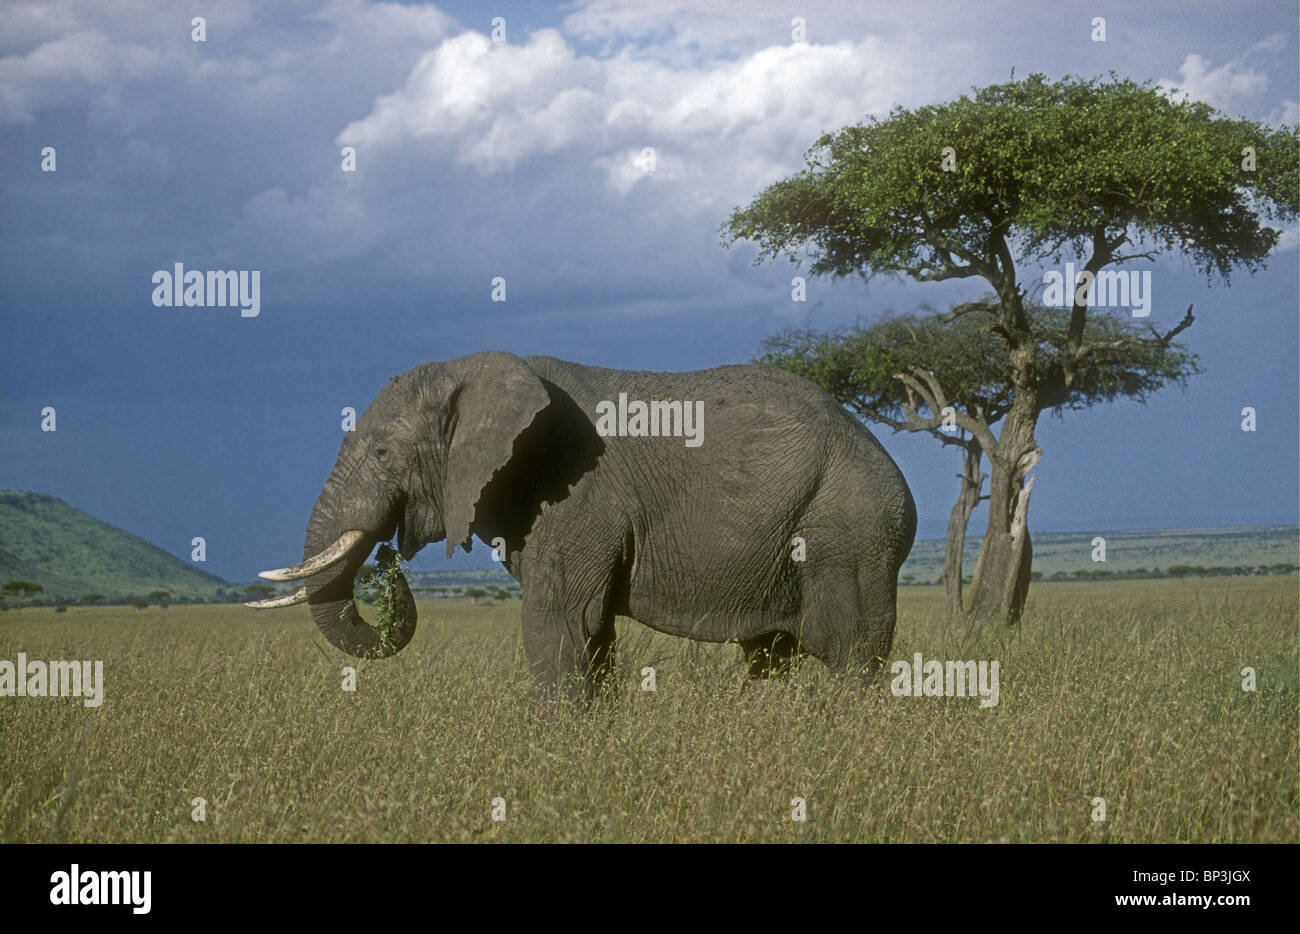 Einsame männliche Elefantenbulle Weiden Fütterung in Savannah Grünland in der Nähe von Balanites Baum-Masai Mara National Reserve Kenia Afrika Stockfoto